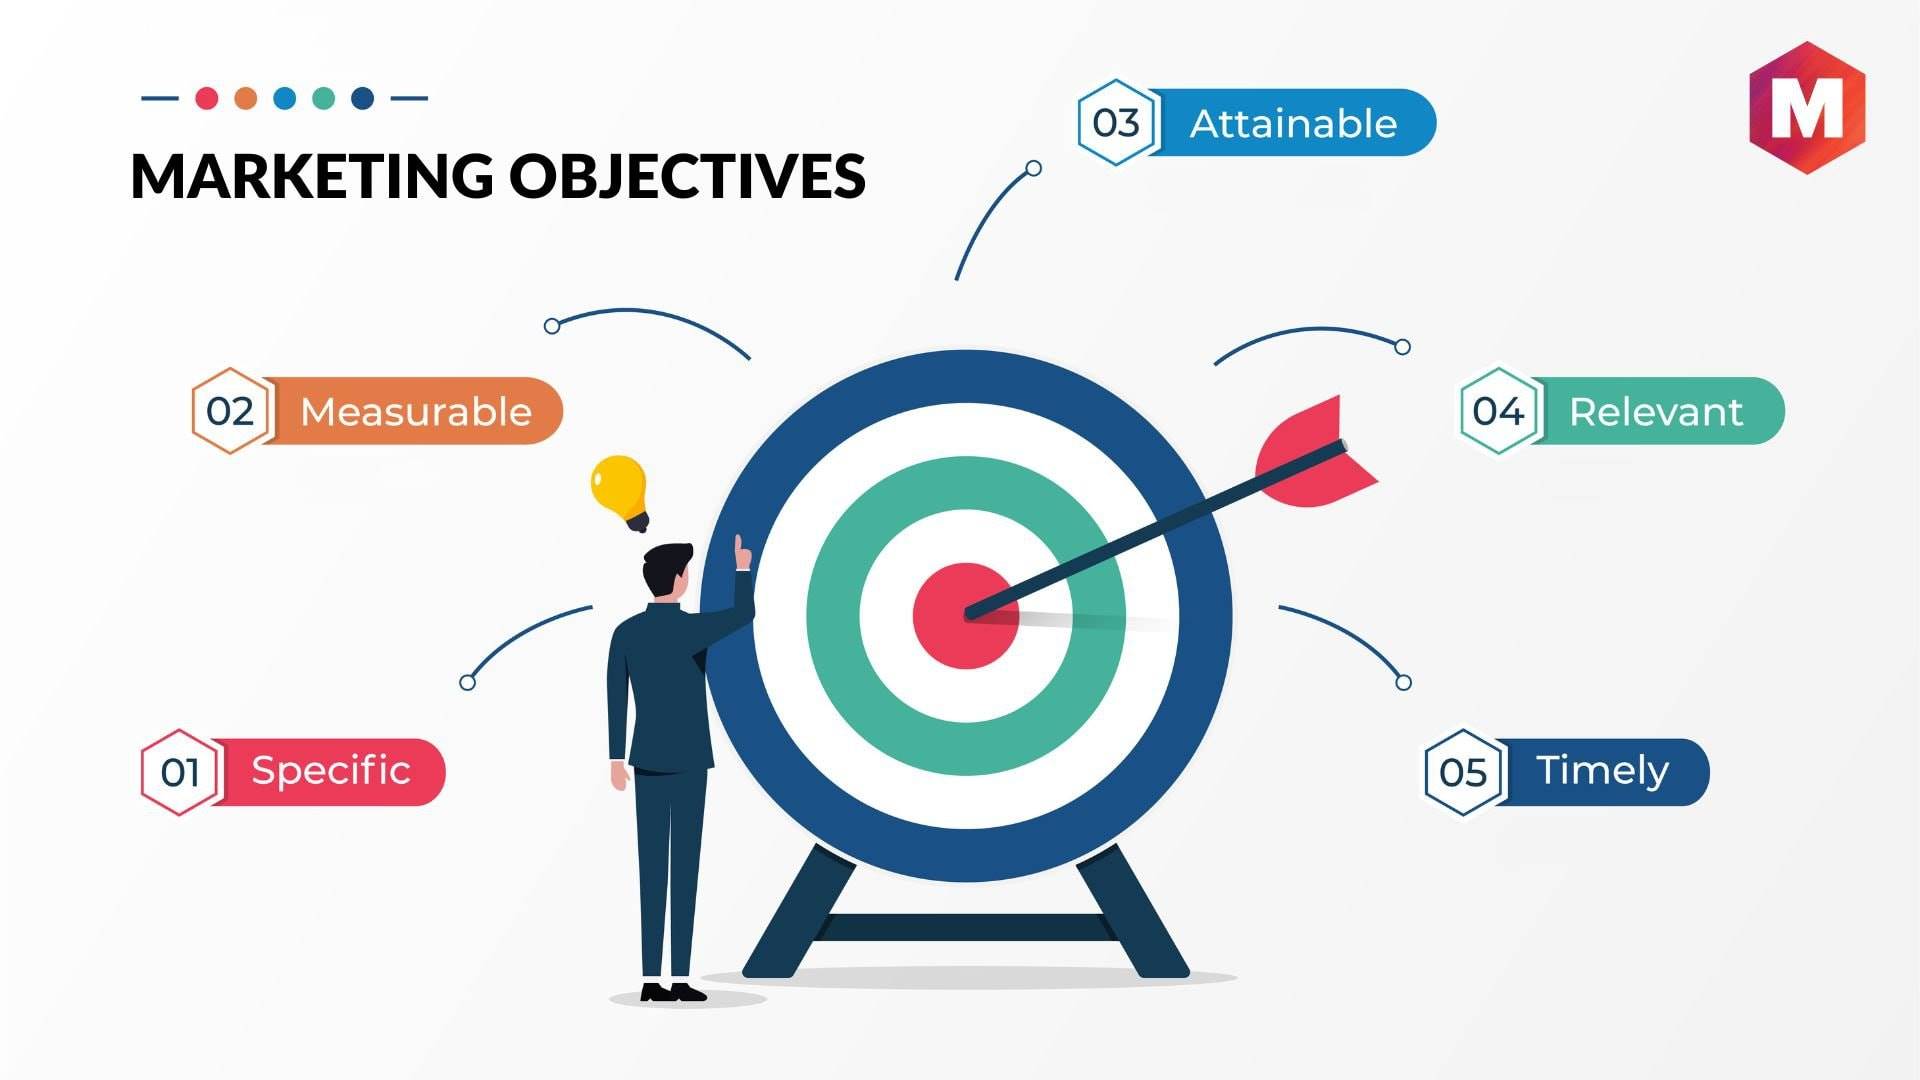 Xác định objectives và các mục tiêu ưu tiên trong chiến dịch marketing để phân bổ hiệu quả